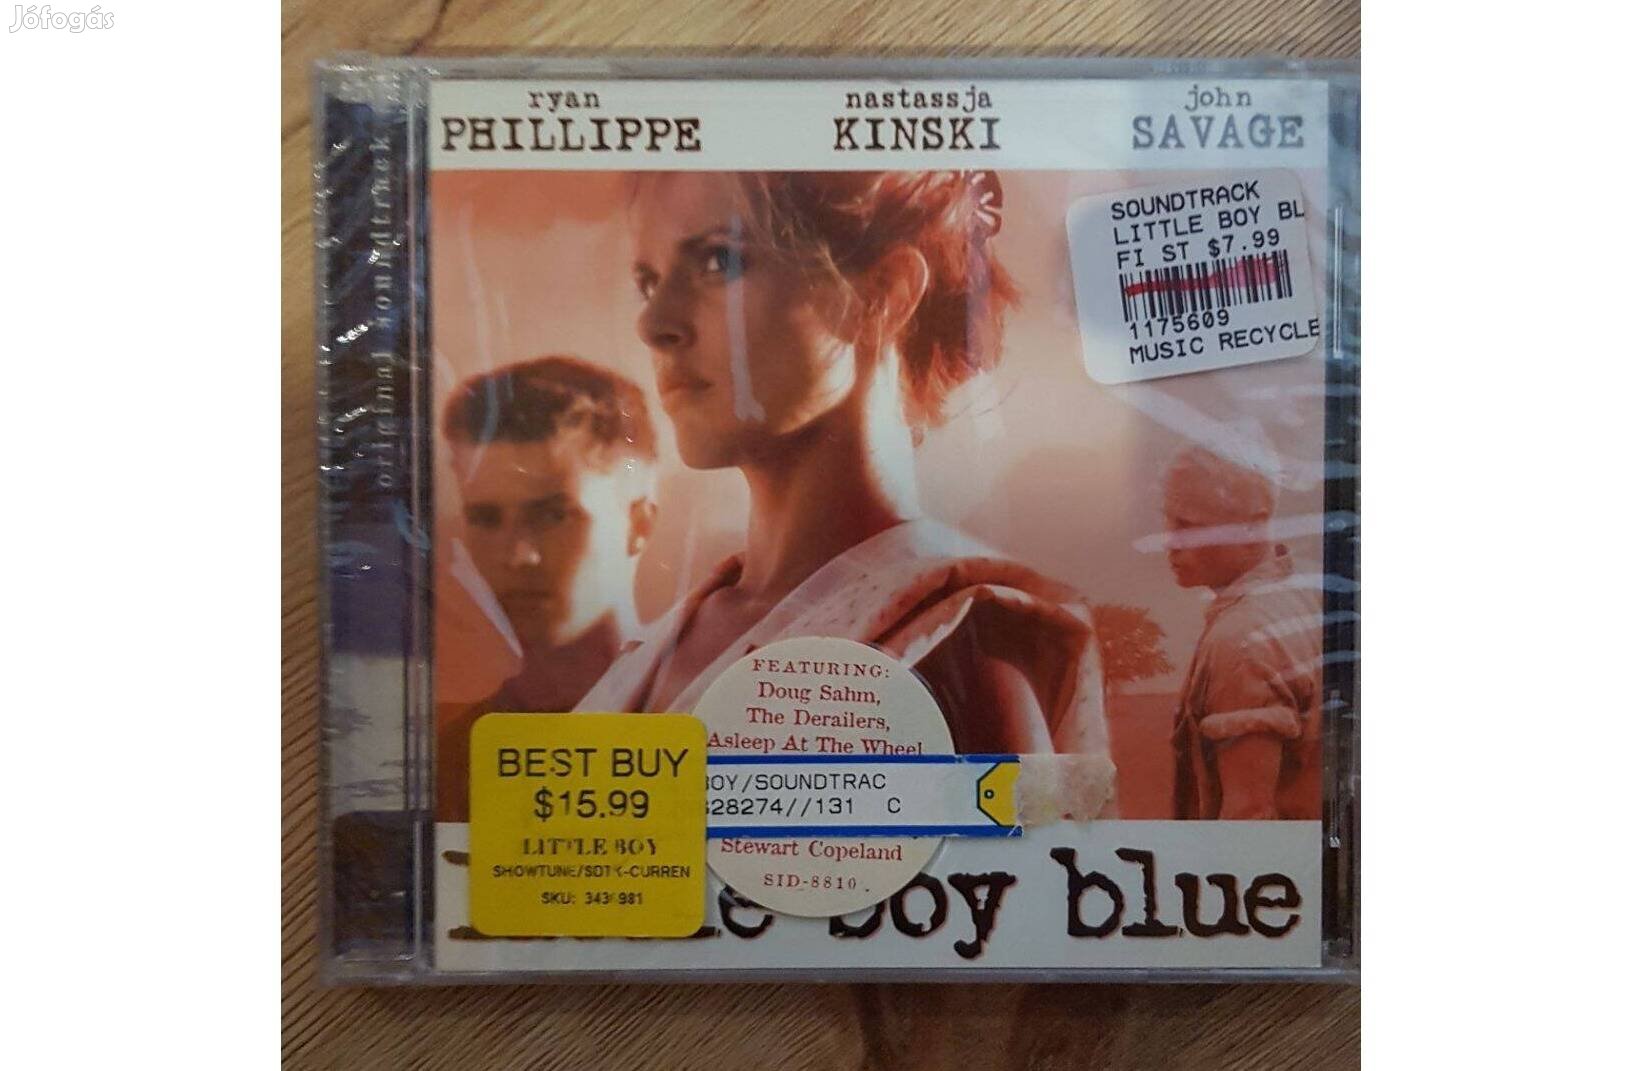 Soundtrack - Little Boy Blue/A múlt árnyai (bontatlan) CD